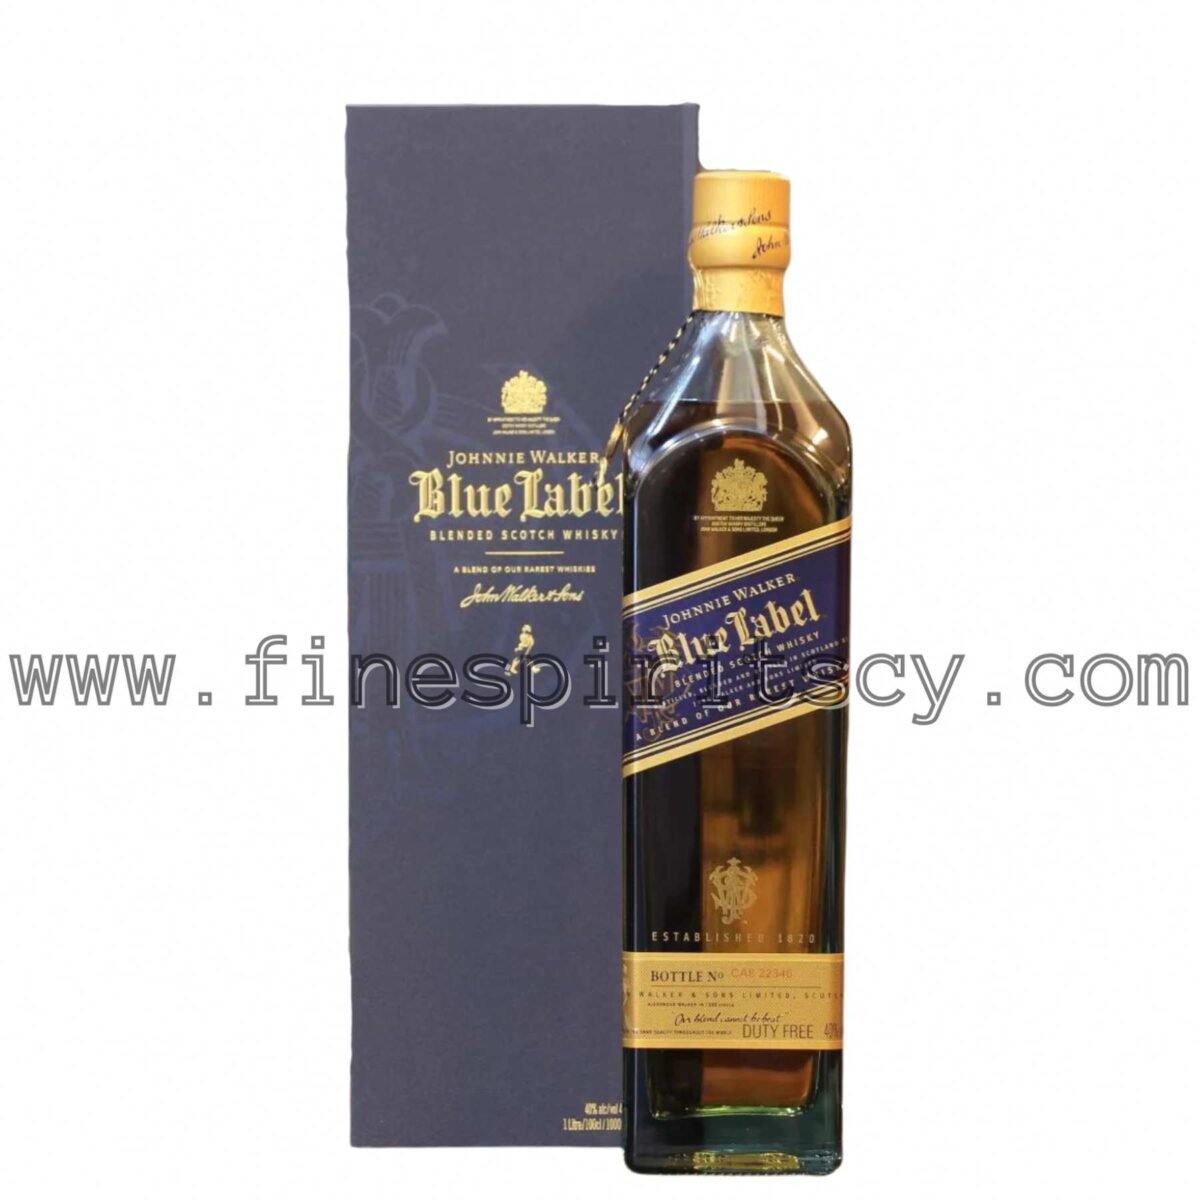 Johnnie Walker Blue Label 1000ml 1L 100cl Cyprus Price Online FSCY CY